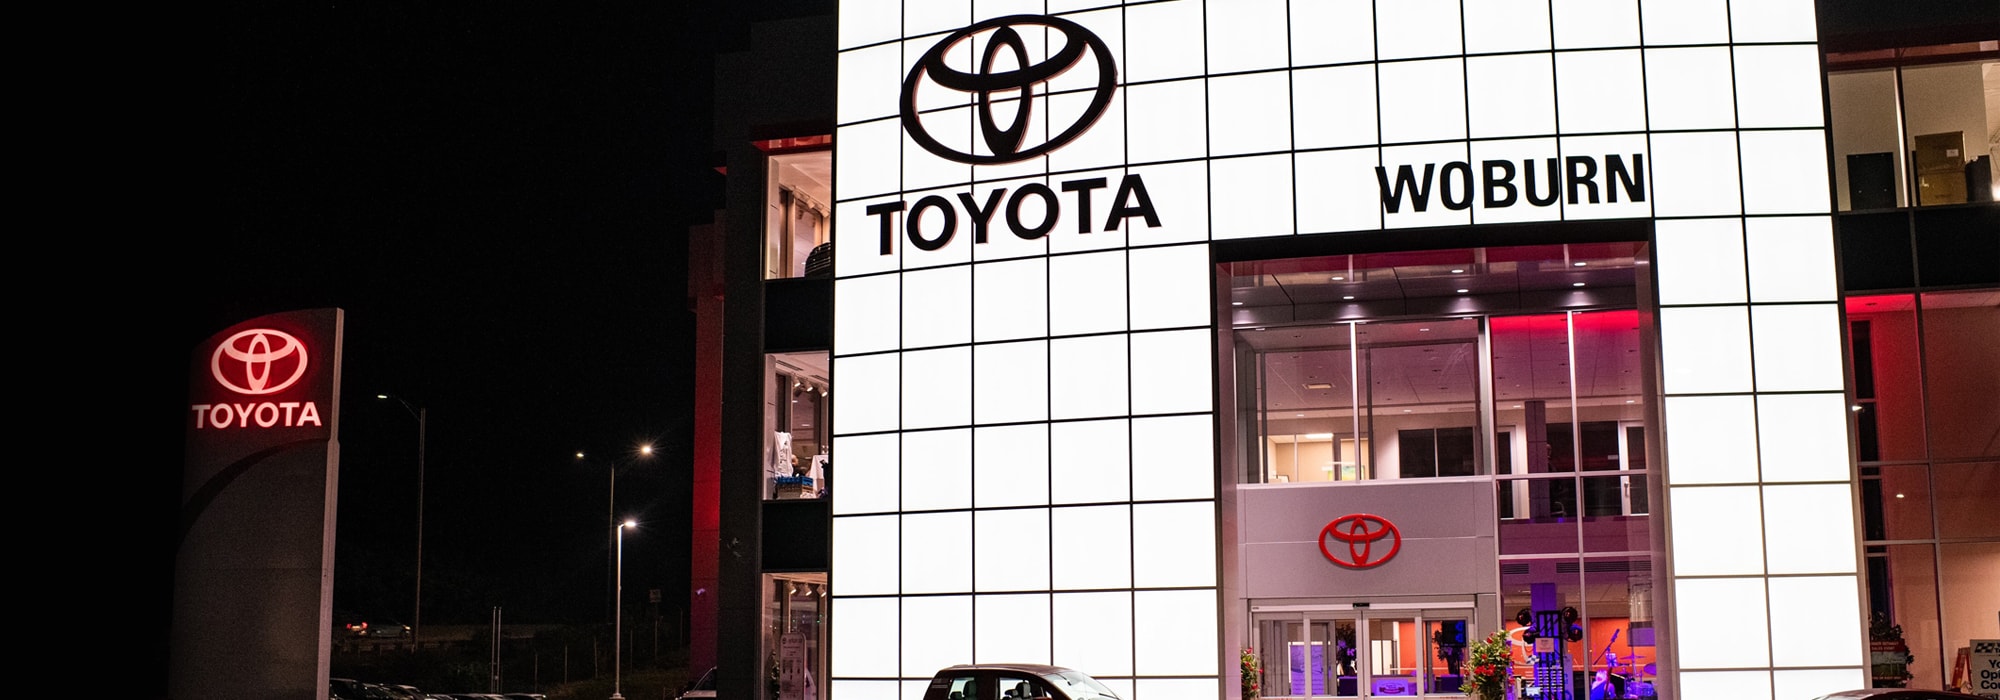 Woburn Toyota New Toyota And Used Car Dealership Near Lynn Ma